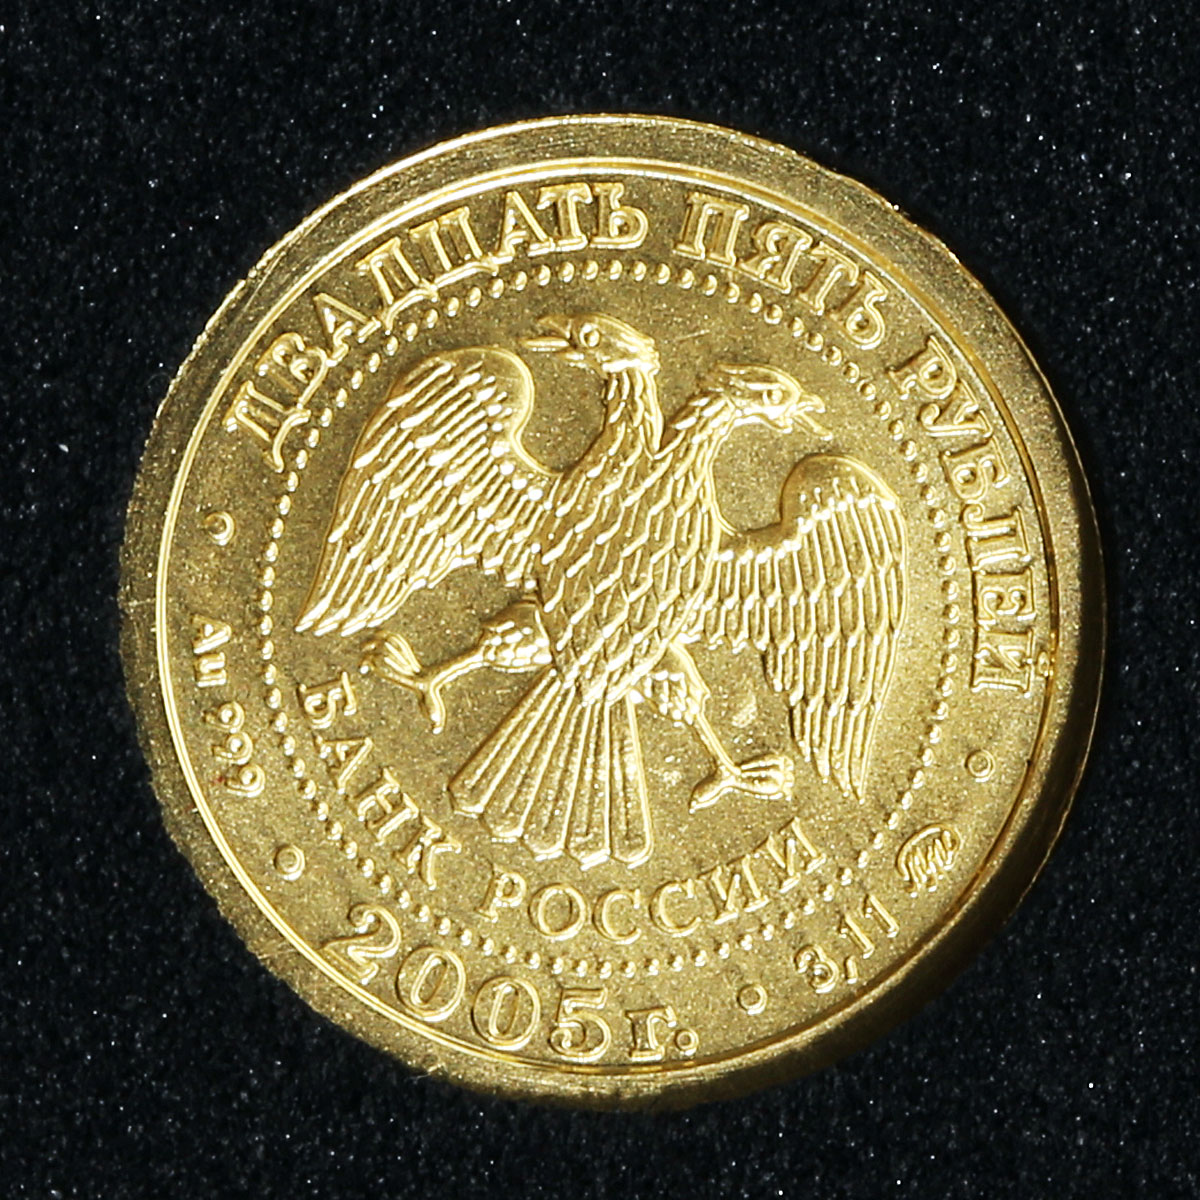 Russia 25 rubles Zodiac Taurus Bull gold 2005